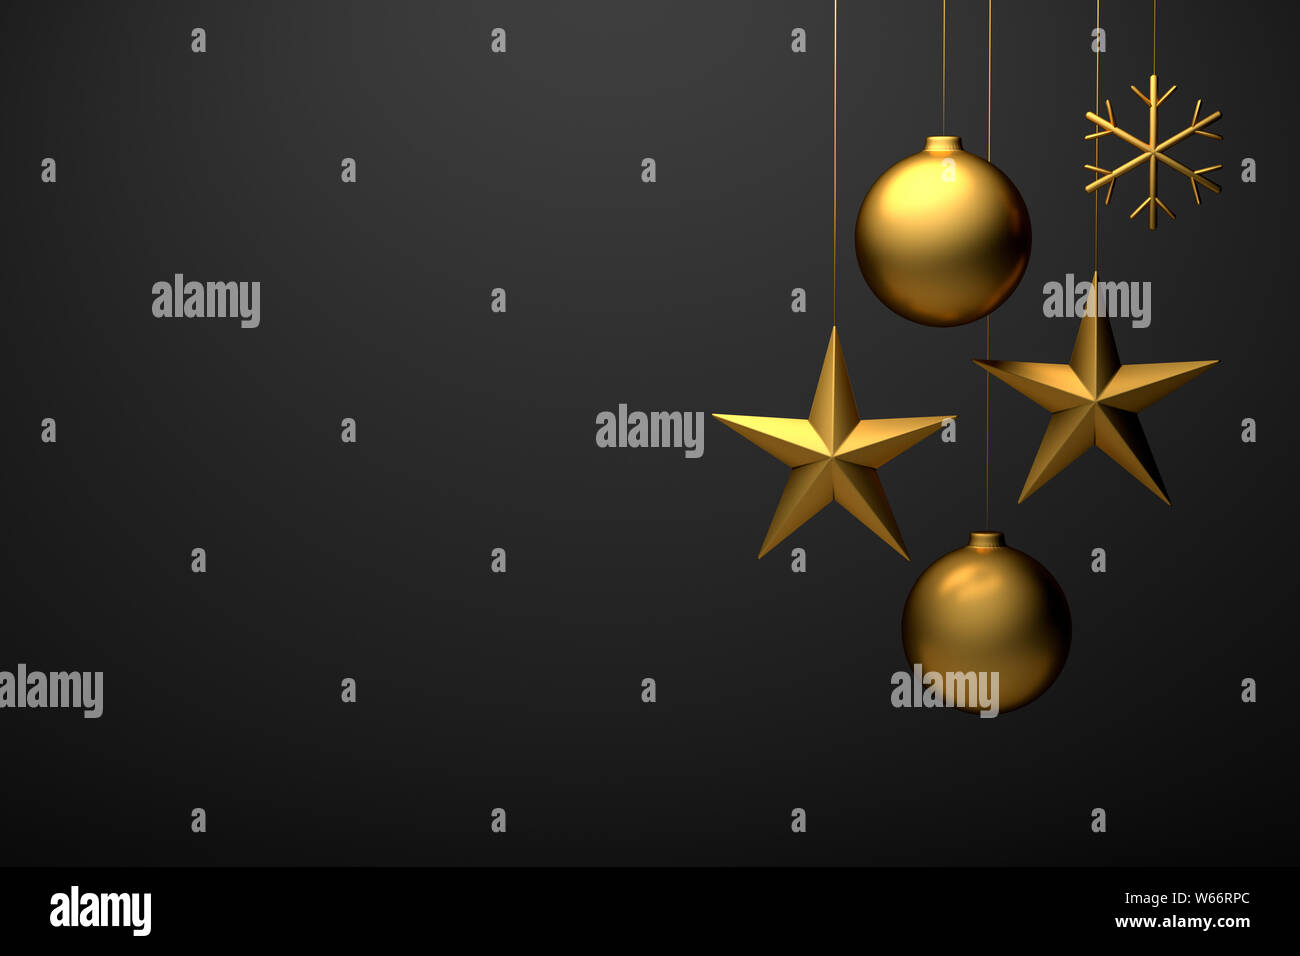 3D-Render von golden weihnachten Zierpflanzen: Ball, Stern, Schneeflocke. Copyspace für benutzerdefinierte Text verfügbar Stockfoto